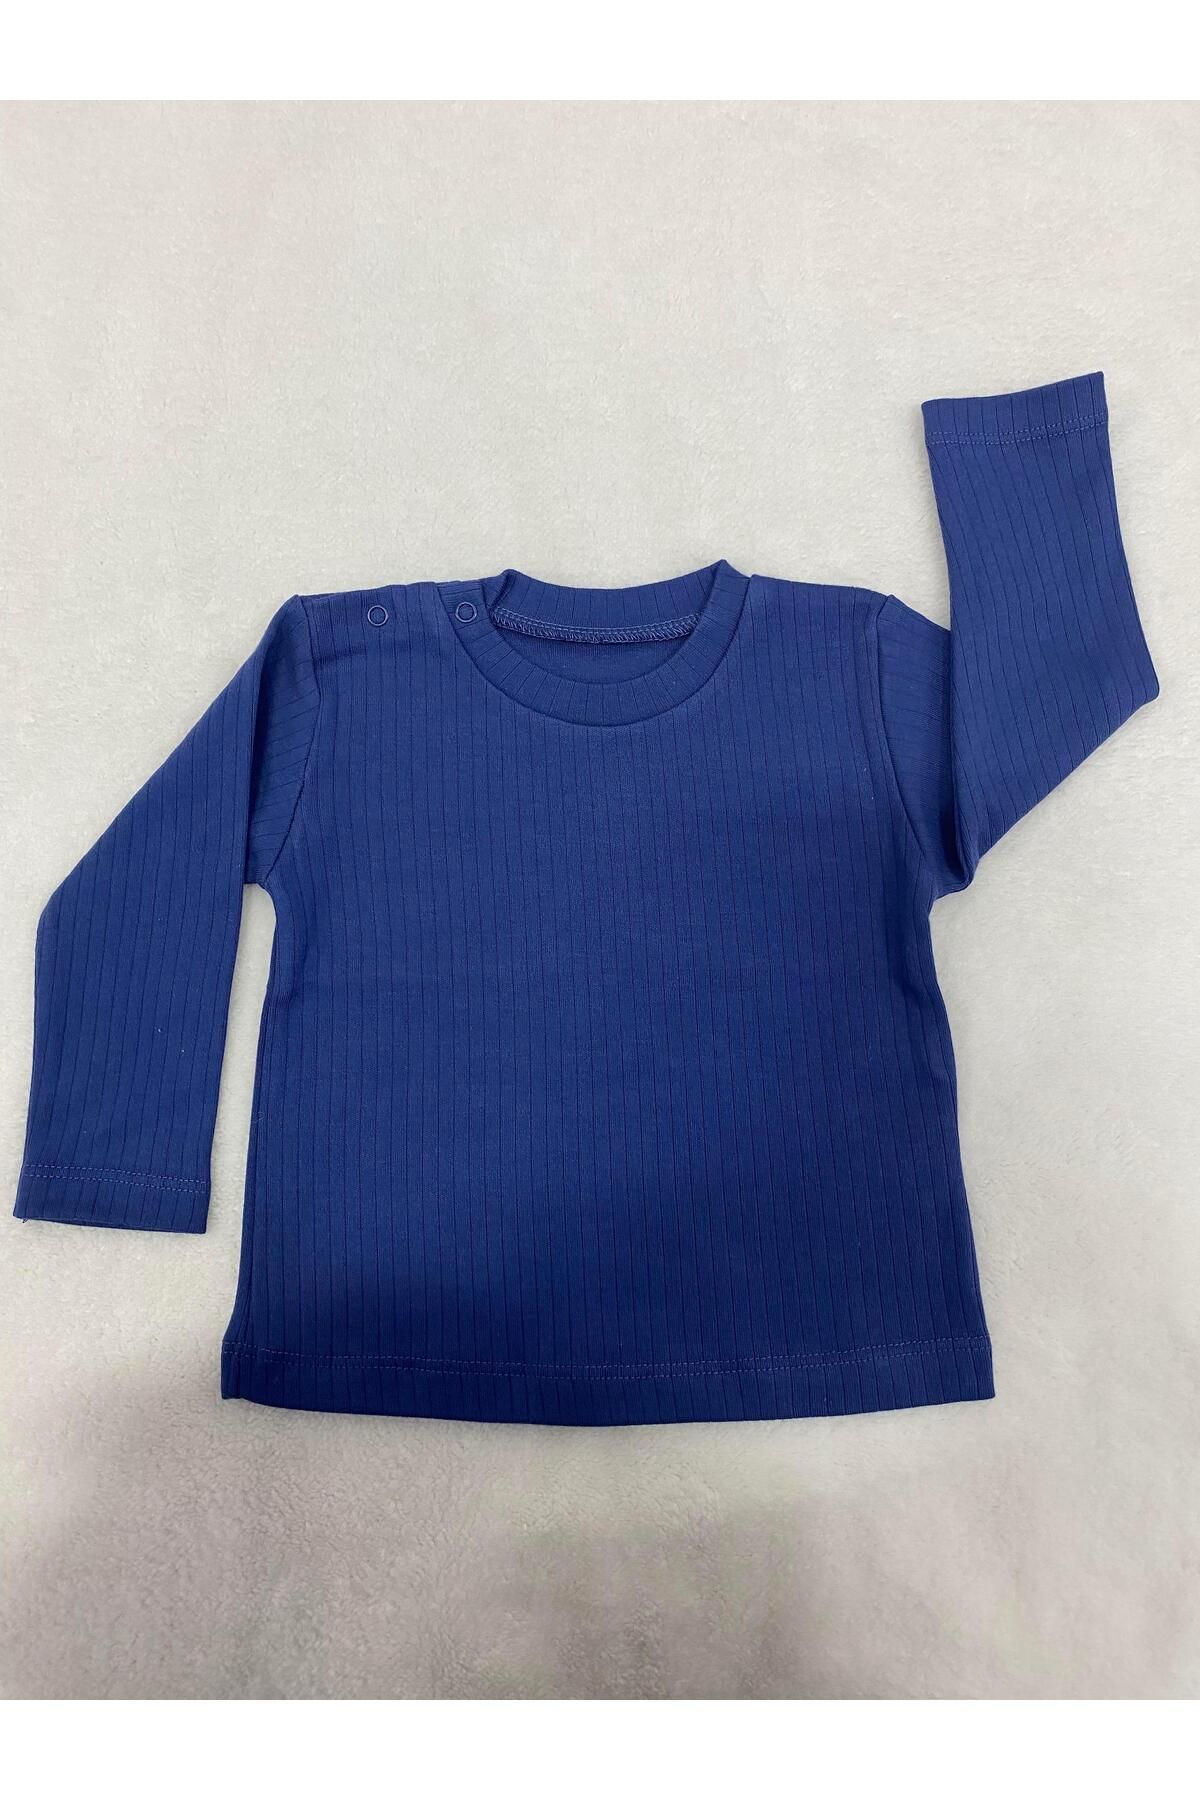 Tiffany Sweatshirt Raporlu Basic Theme Mavi